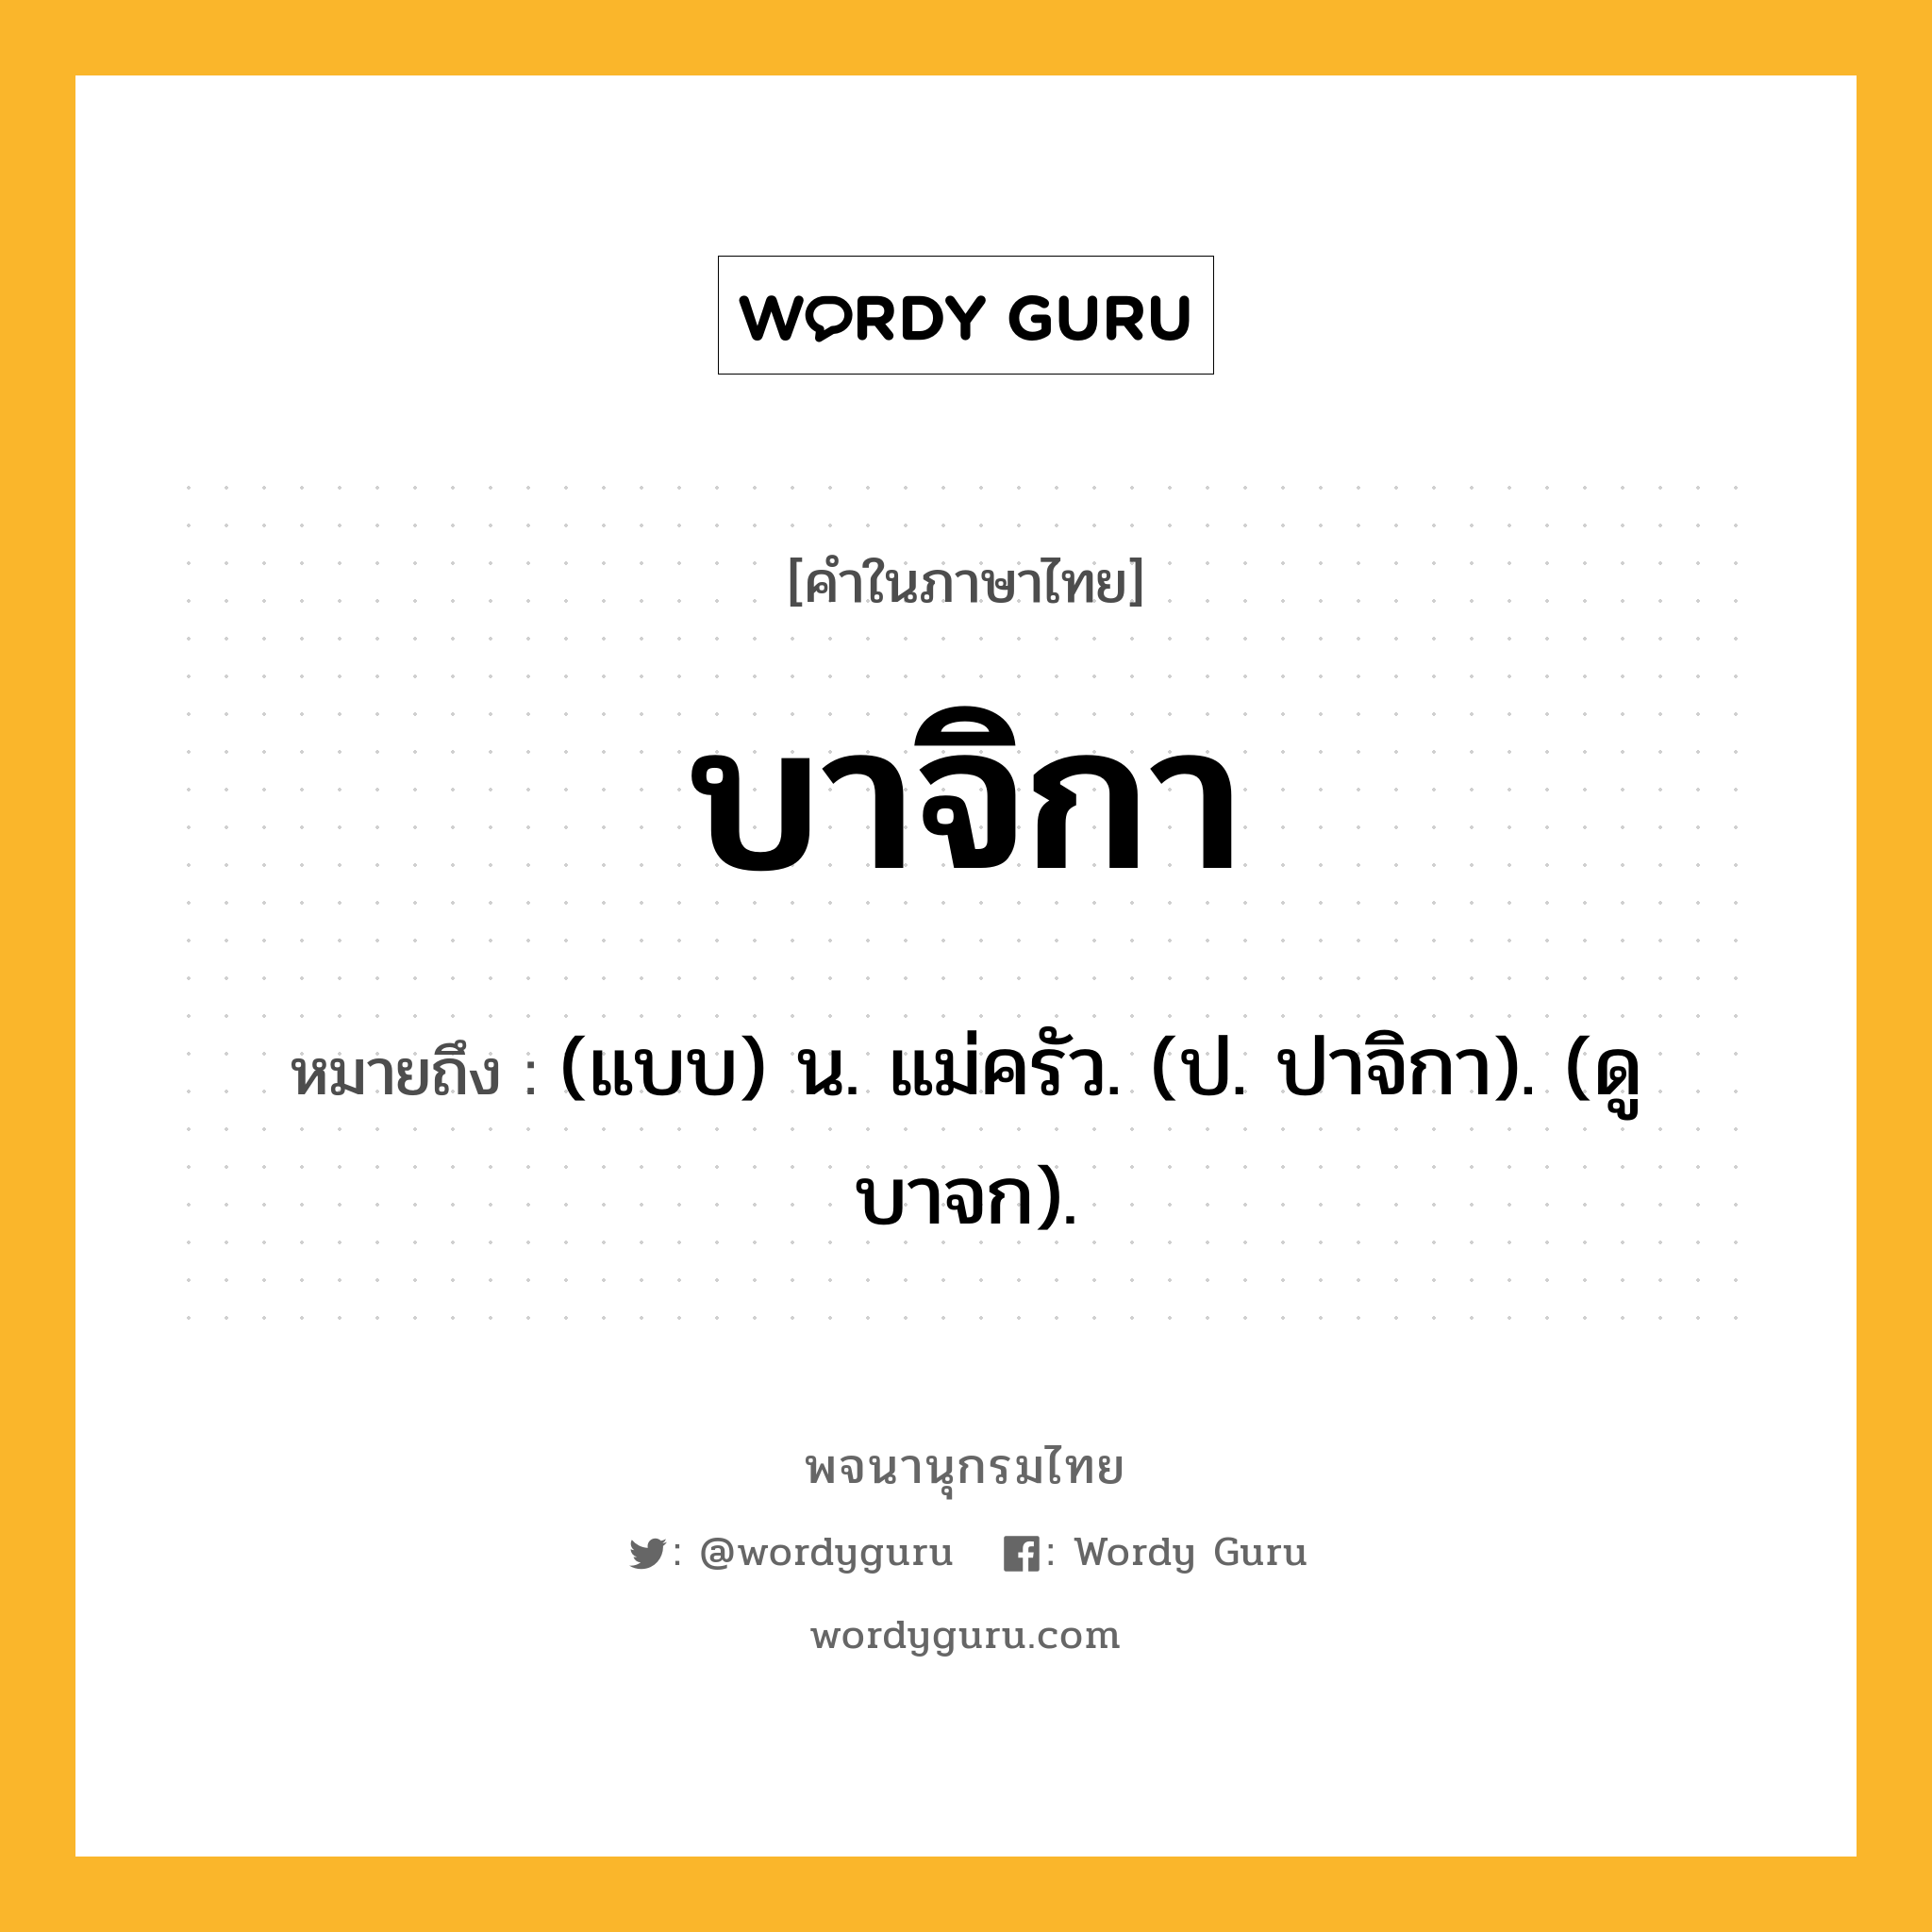 บาจิกา ความหมาย หมายถึงอะไร?, คำในภาษาไทย บาจิกา หมายถึง (แบบ) น. แม่ครัว. (ป. ปาจิกา). (ดู บาจก).